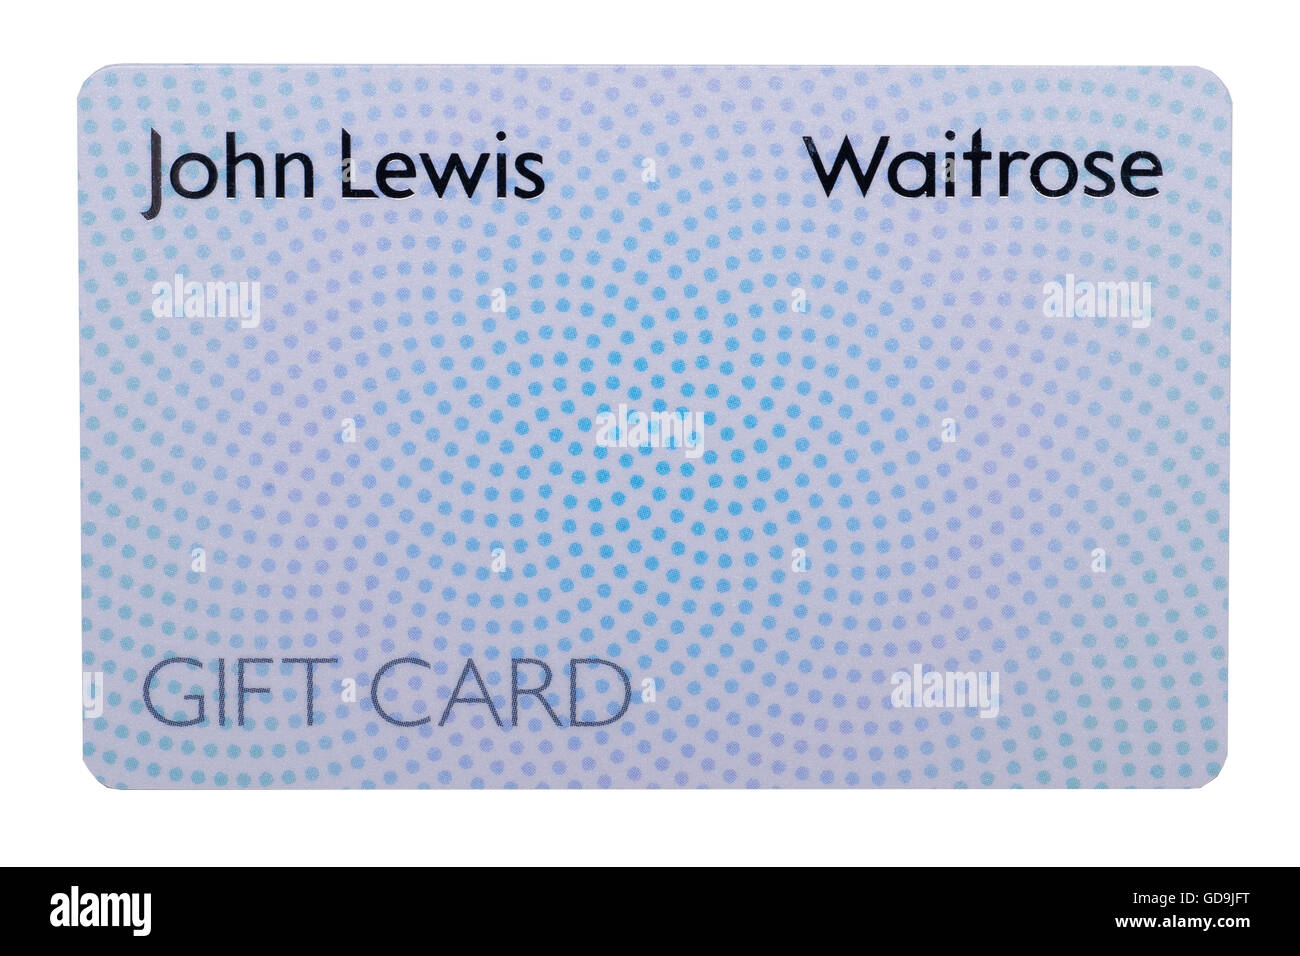 John Lewis ou une carte-cadeau voucher Waitrose sur fond blanc Banque D'Images